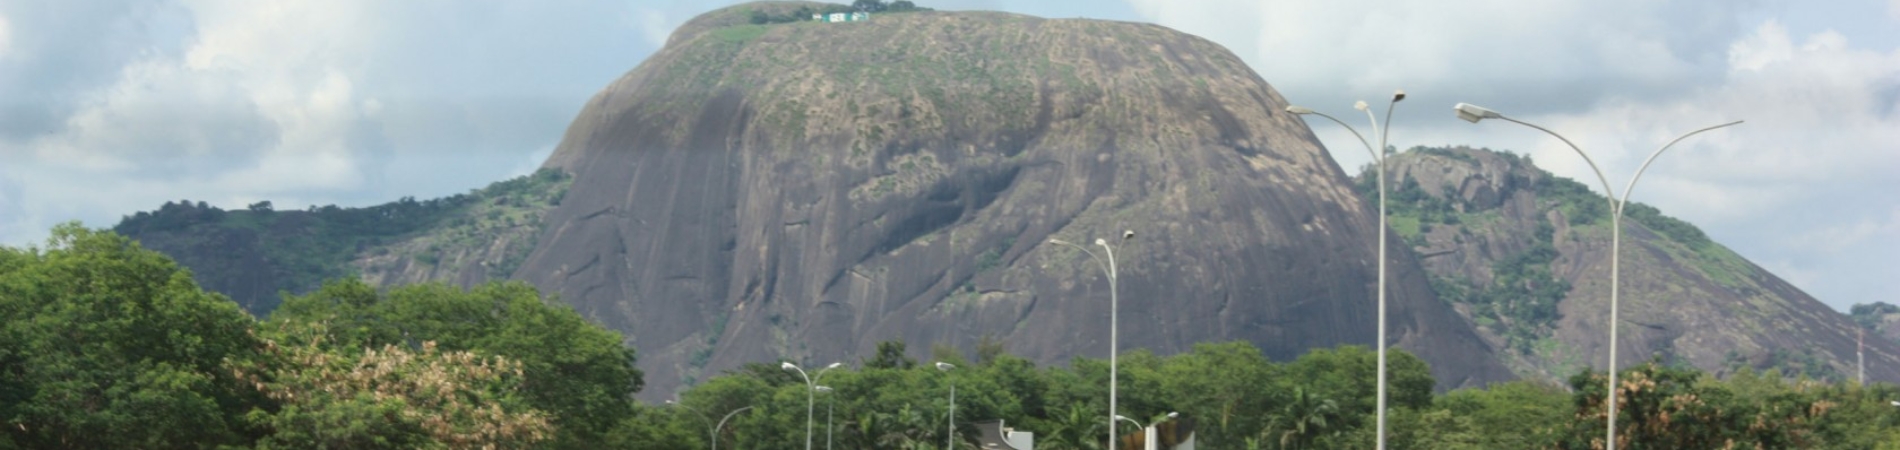 Zuma Rock, Abuja, Nigeria